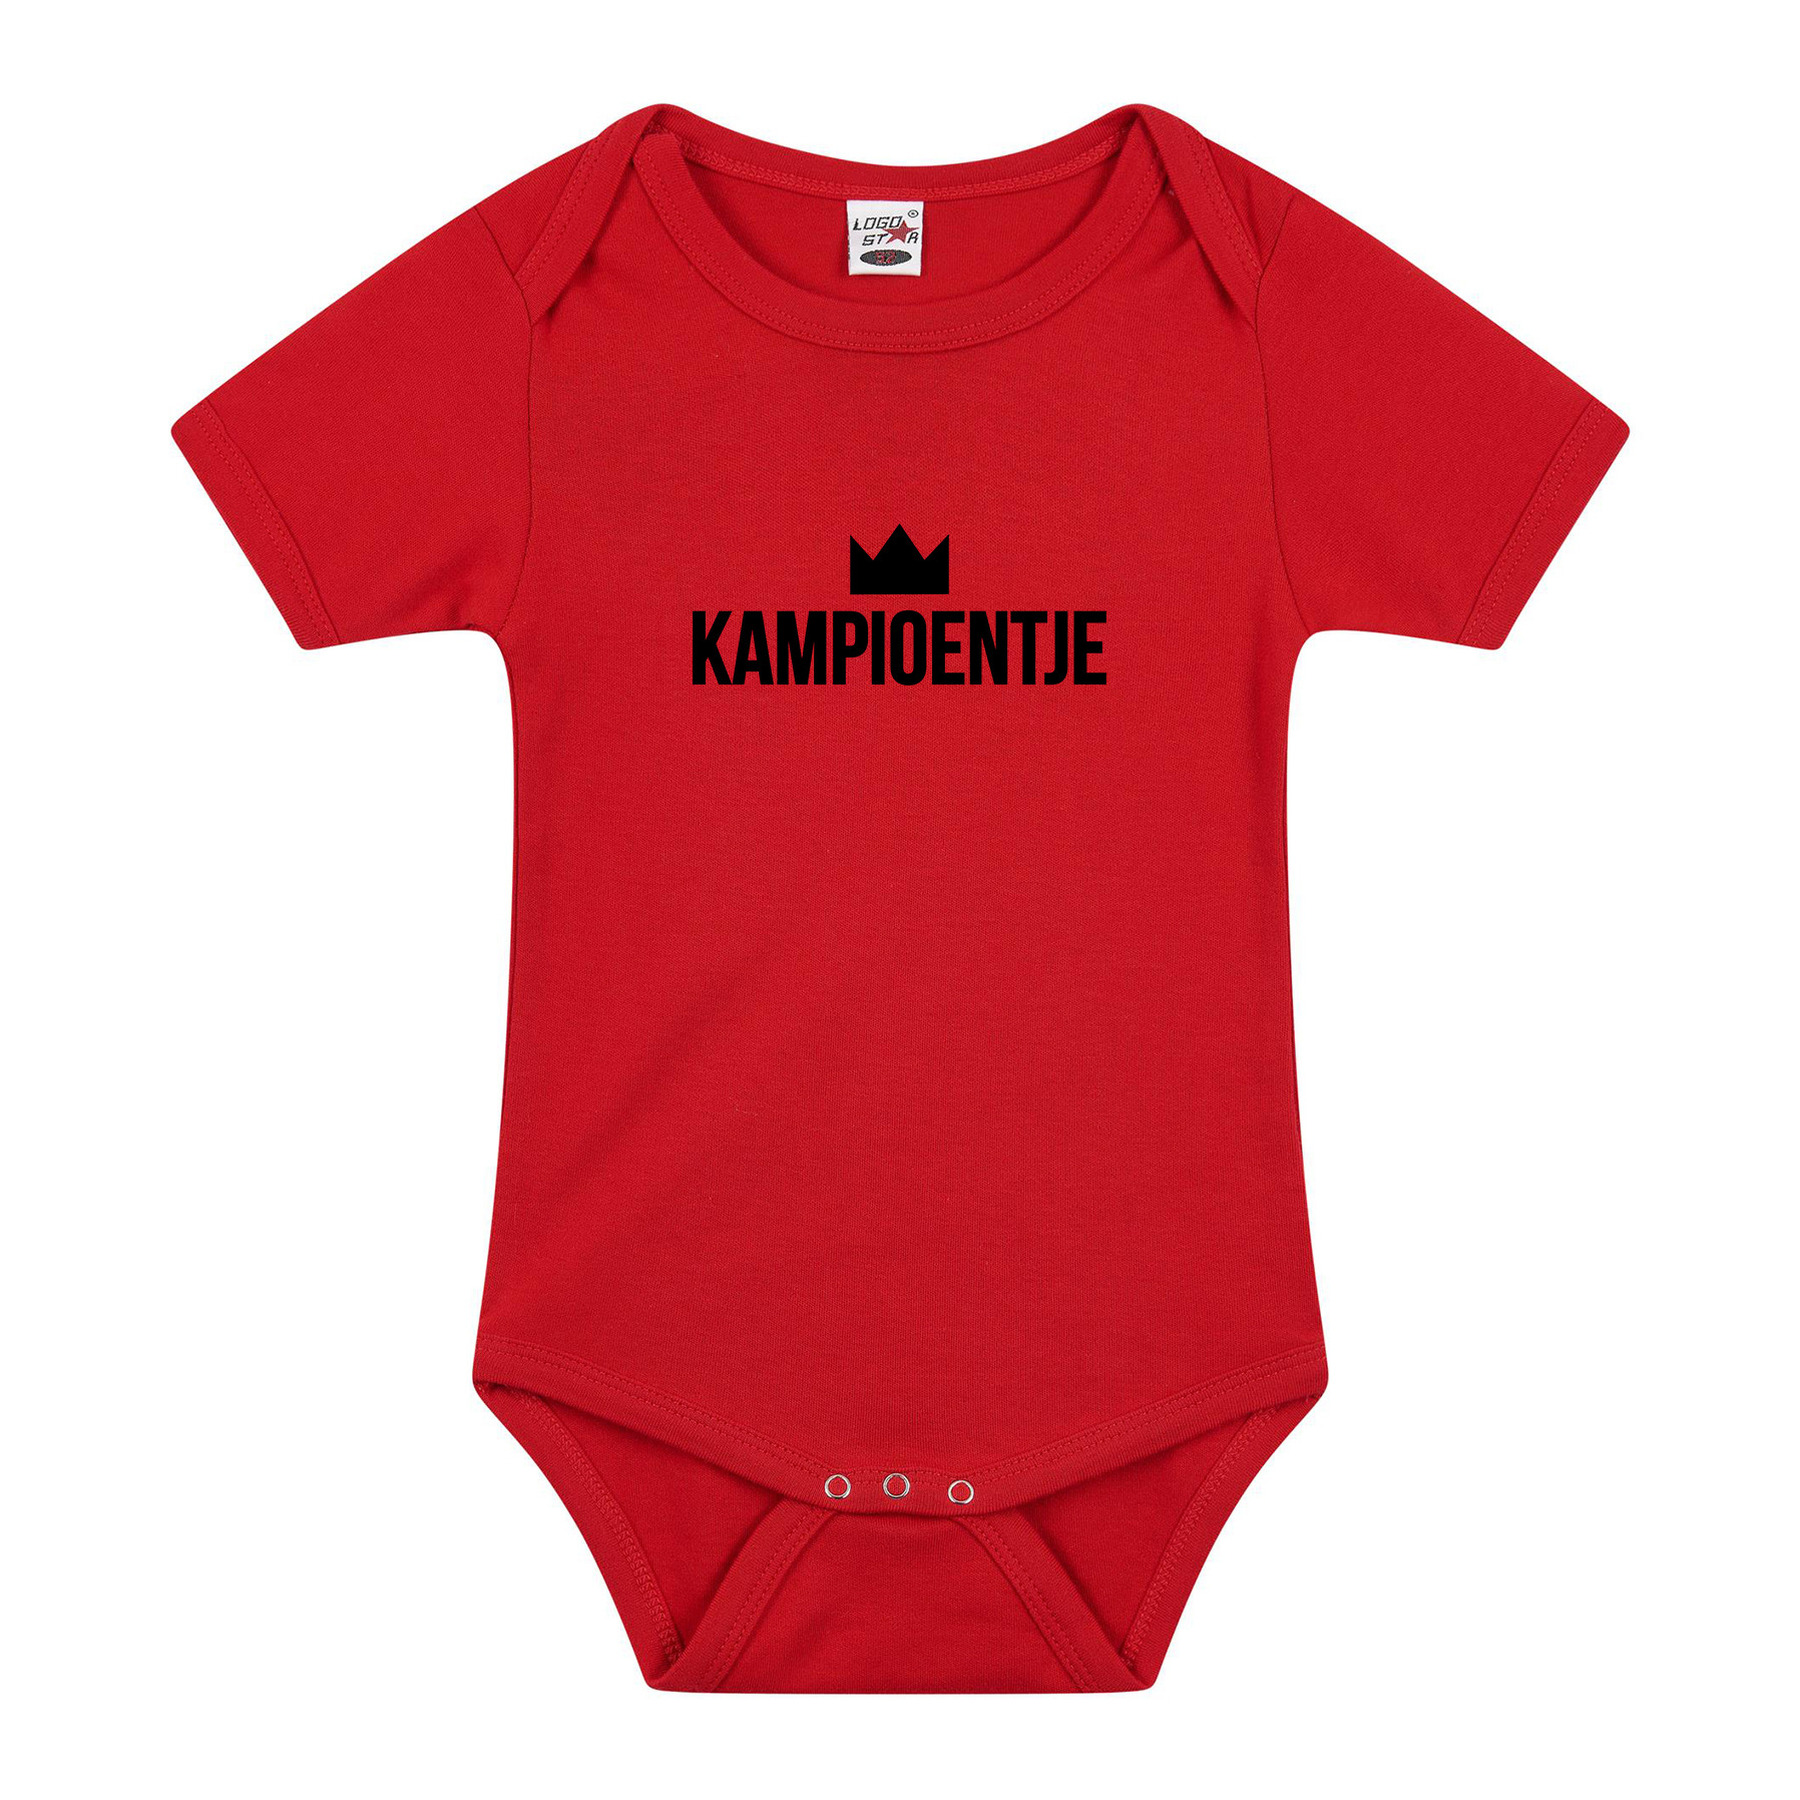 Belgie supporter Kampioentje verkleed/cadeau baby rompertje rood jongen/meisje EK / WK supporter